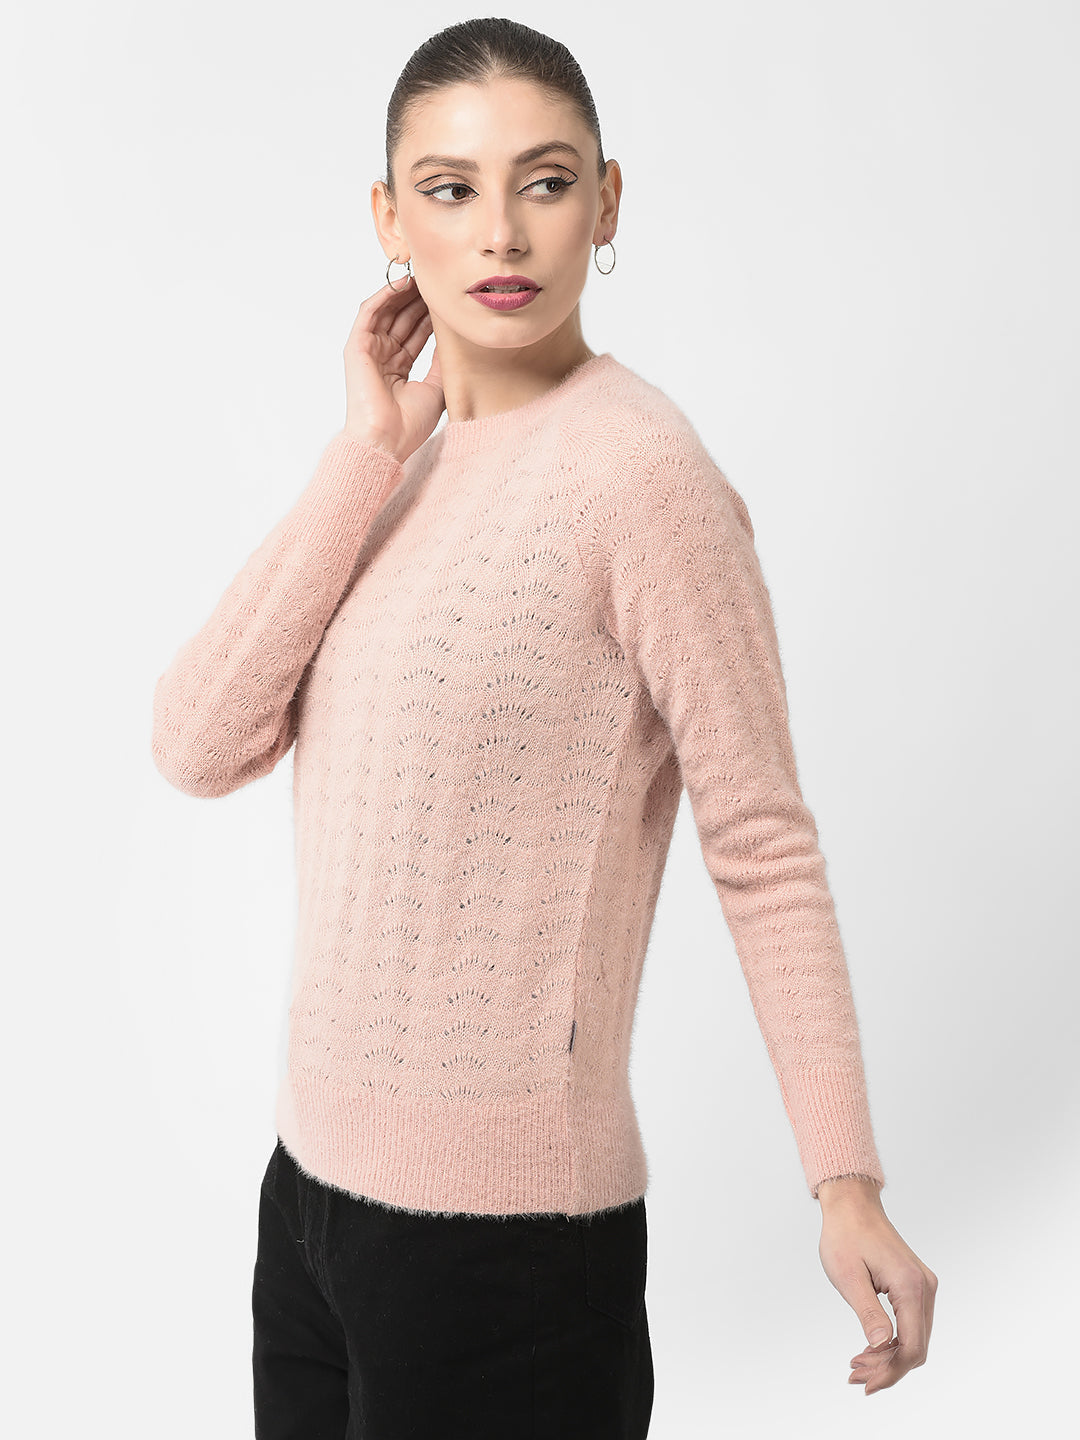  Fuzzy Peach Sweater